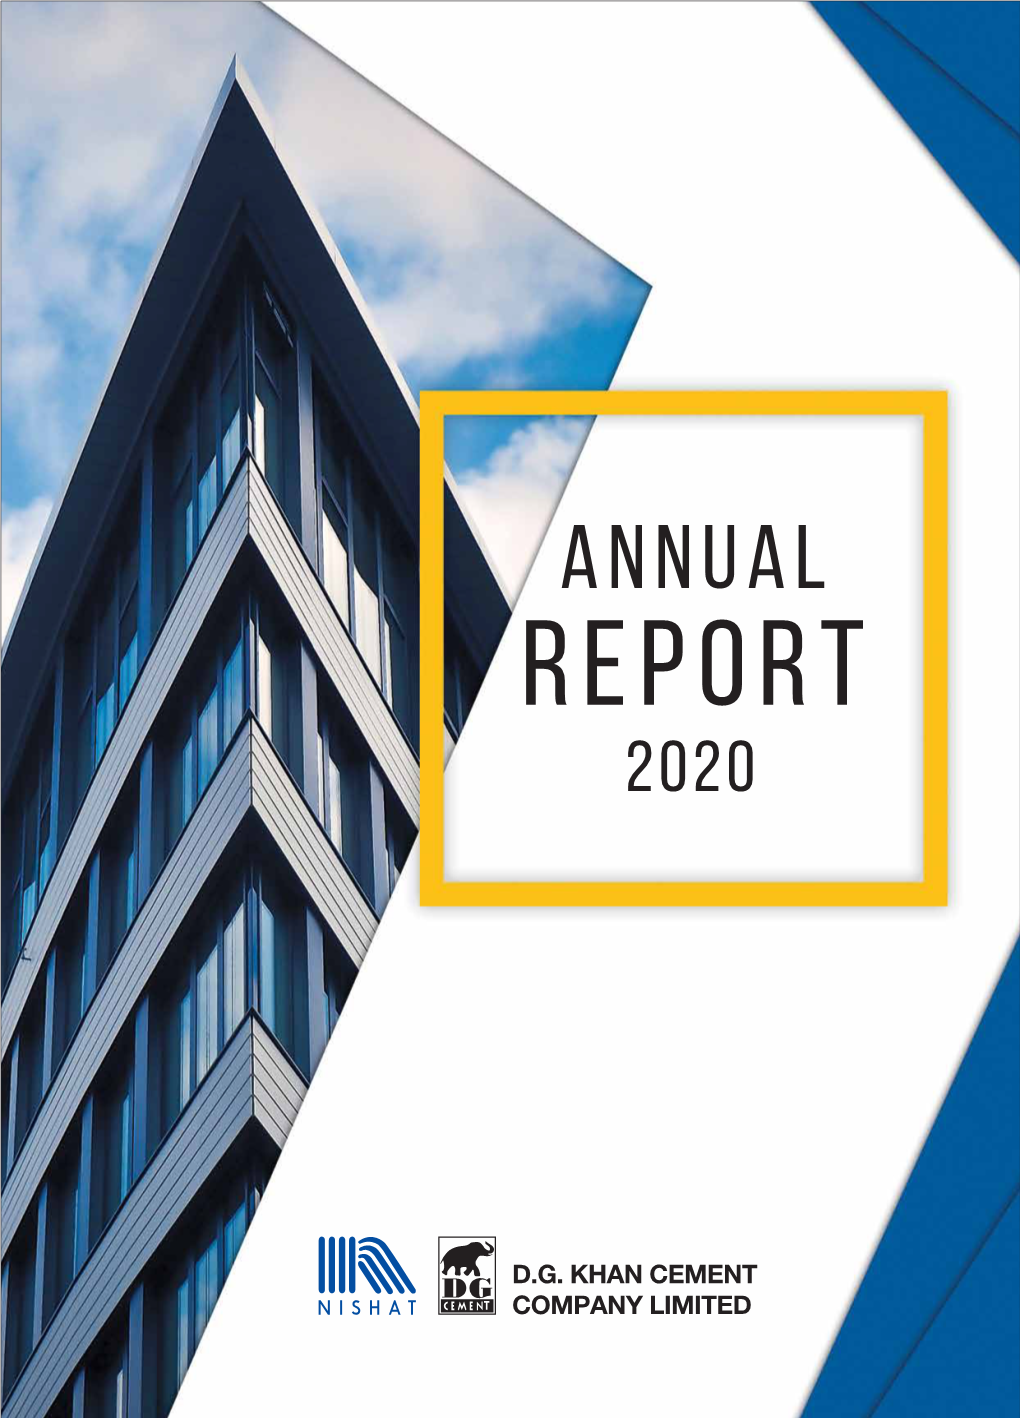 DGKC Annual Report 2020